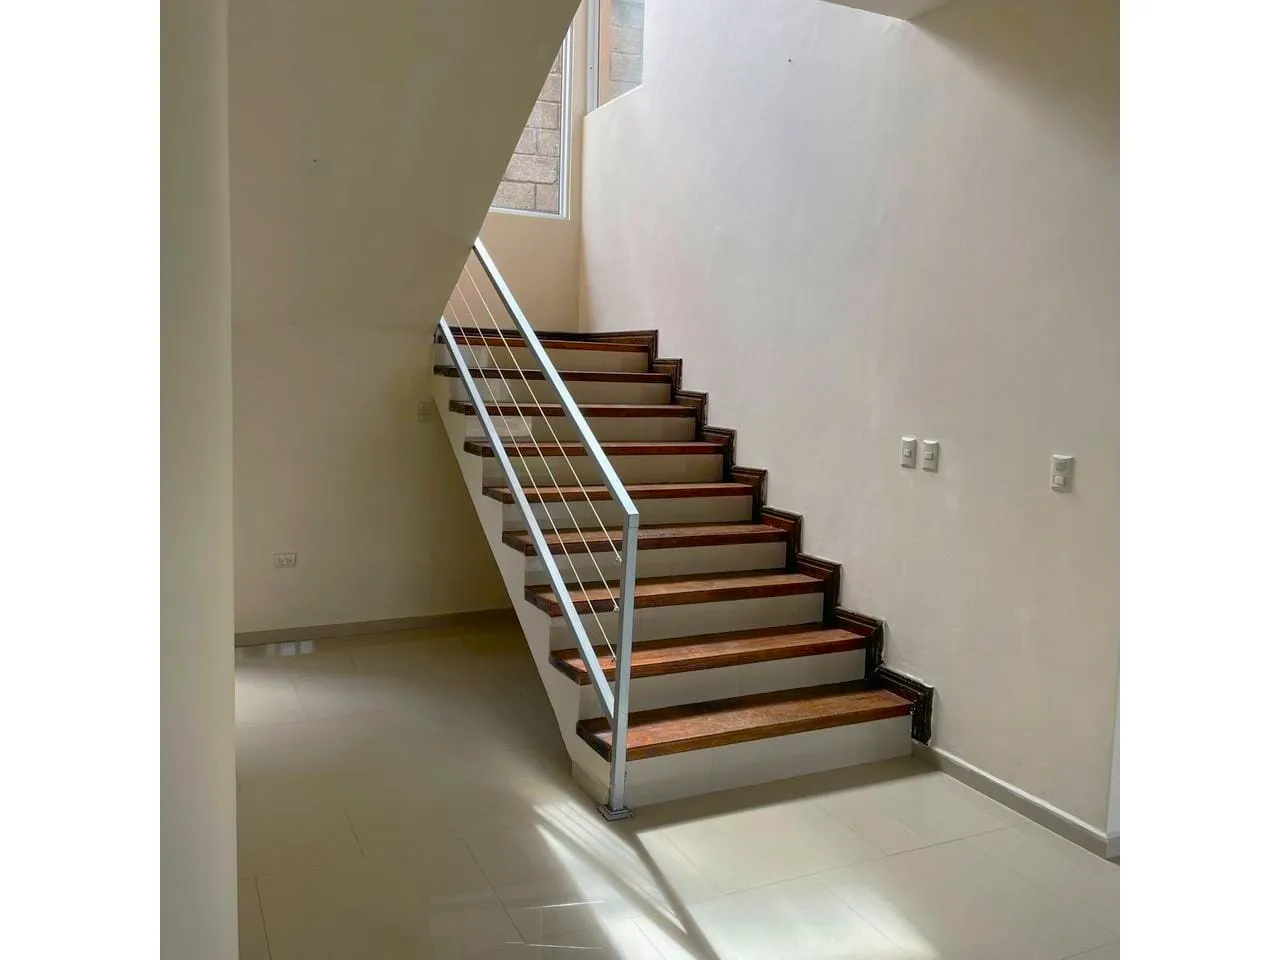 Escaleras decoradas con madera, paredes de color claro, suelo de porcelalanto que dan acceso a las 2 habitaciones del nivel superior.